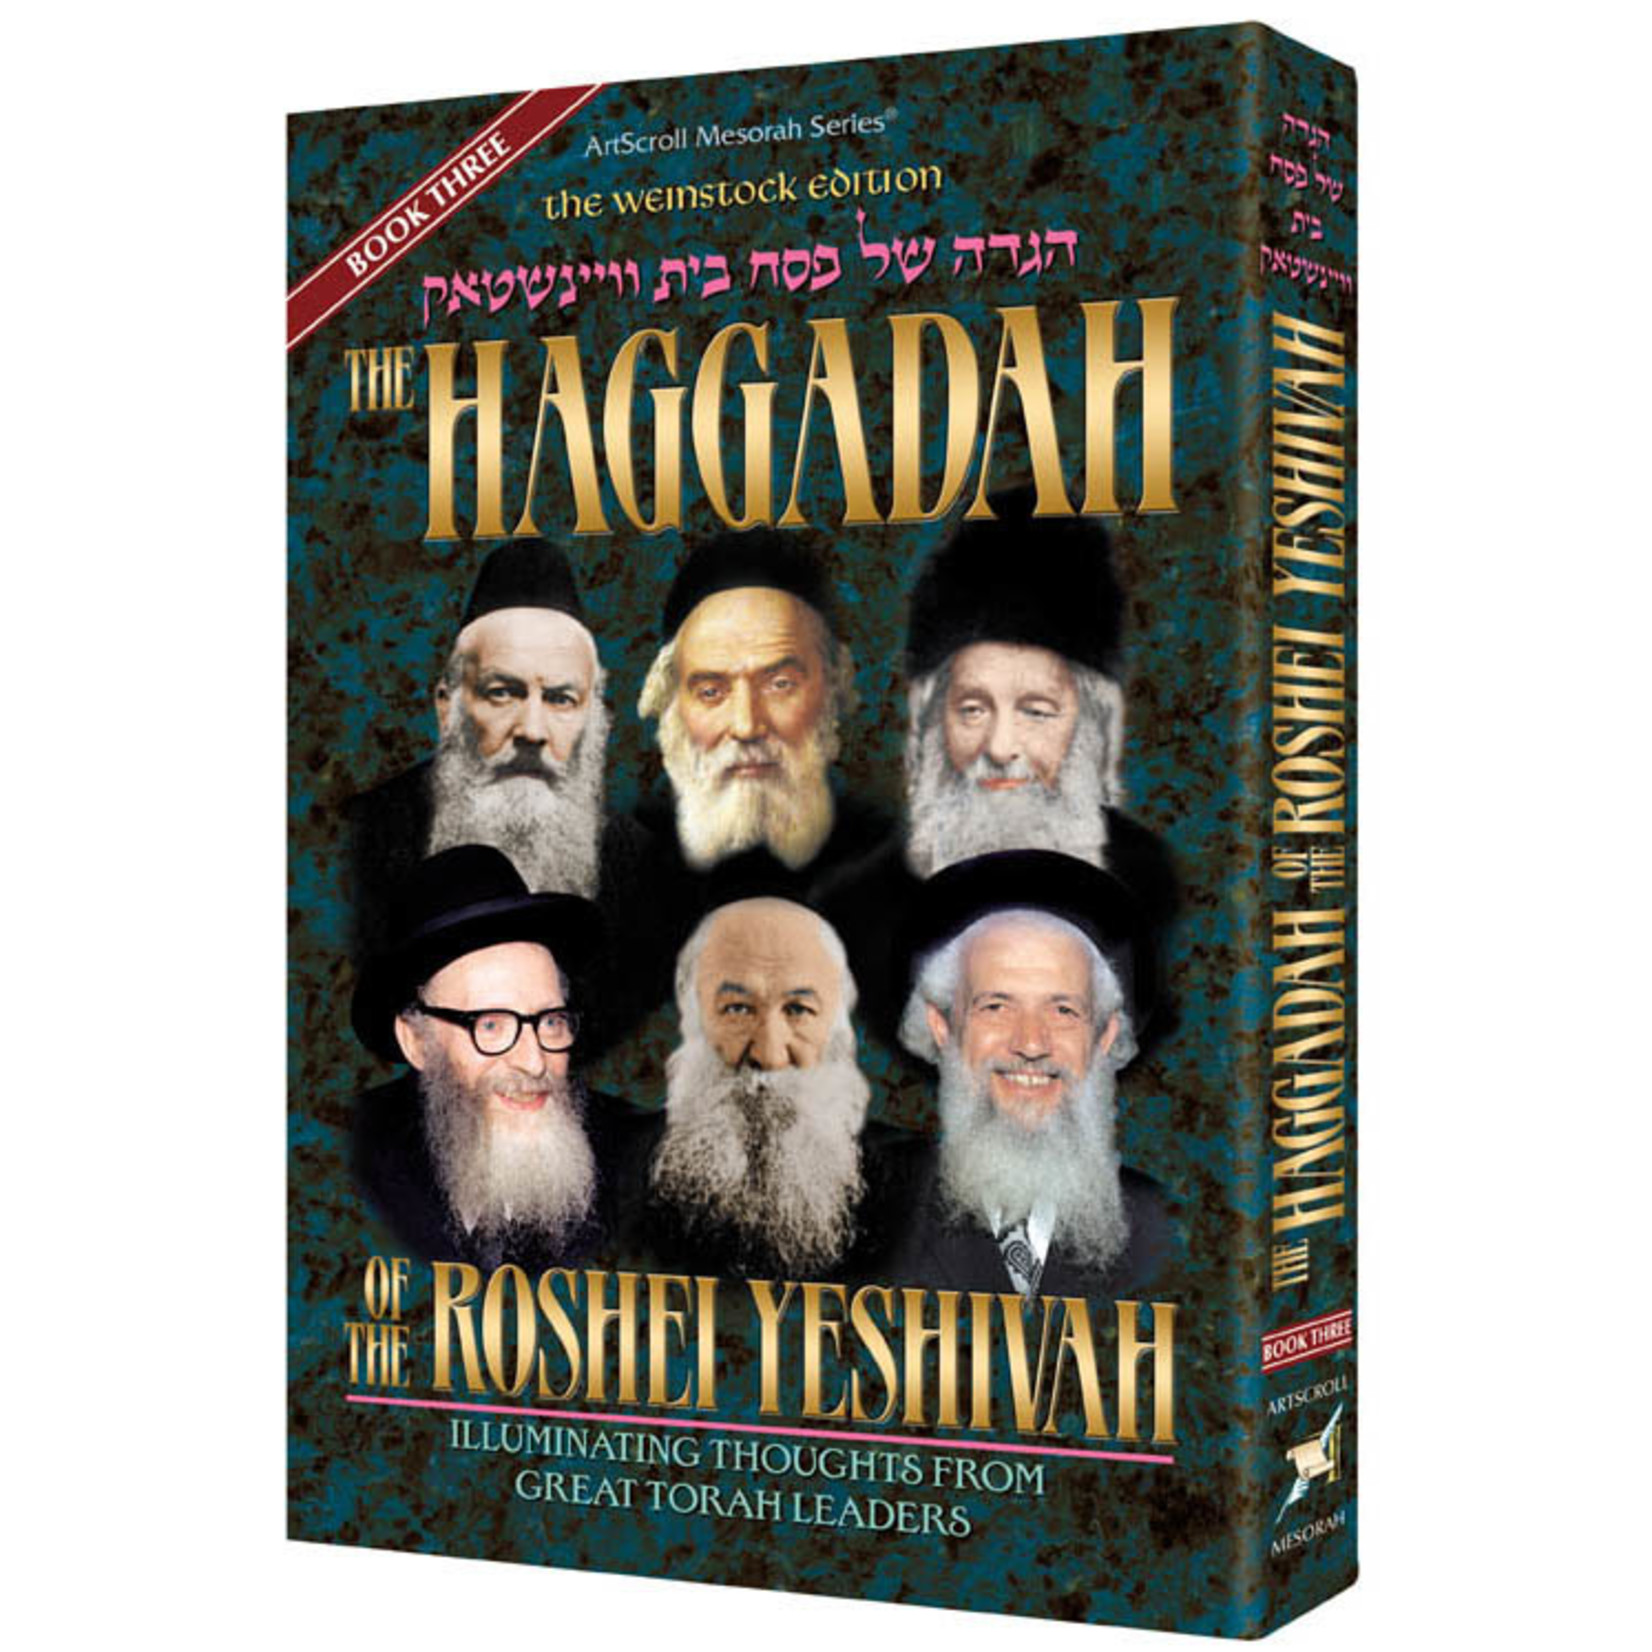 Haggadah of the Roshei Yeshiva - vol 3